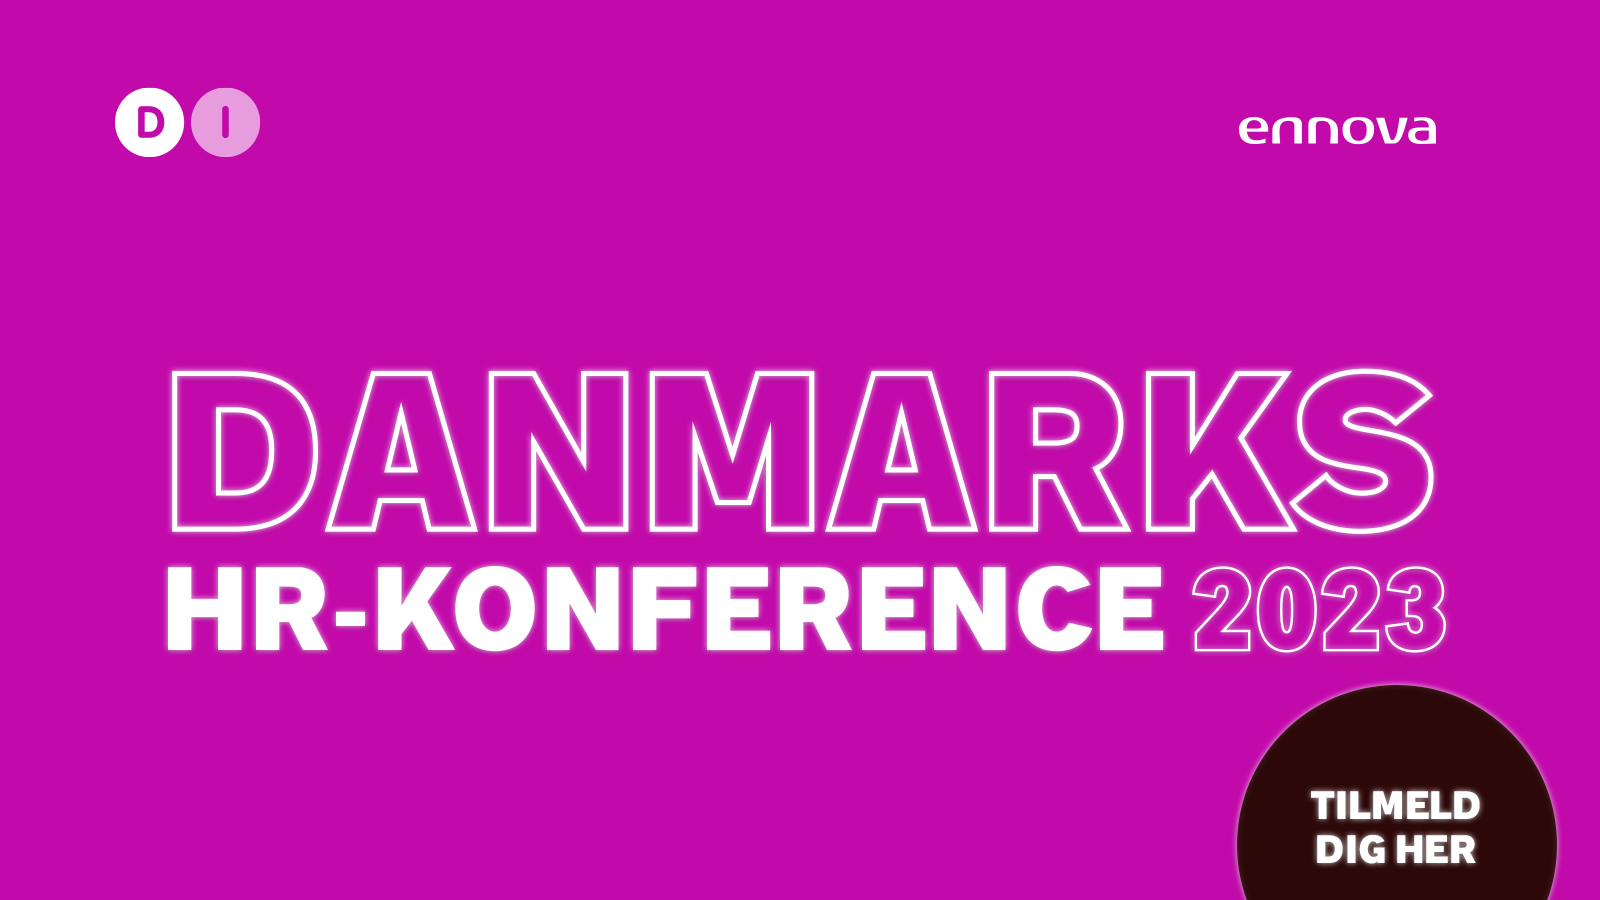 Danmarks HR-konference 2023